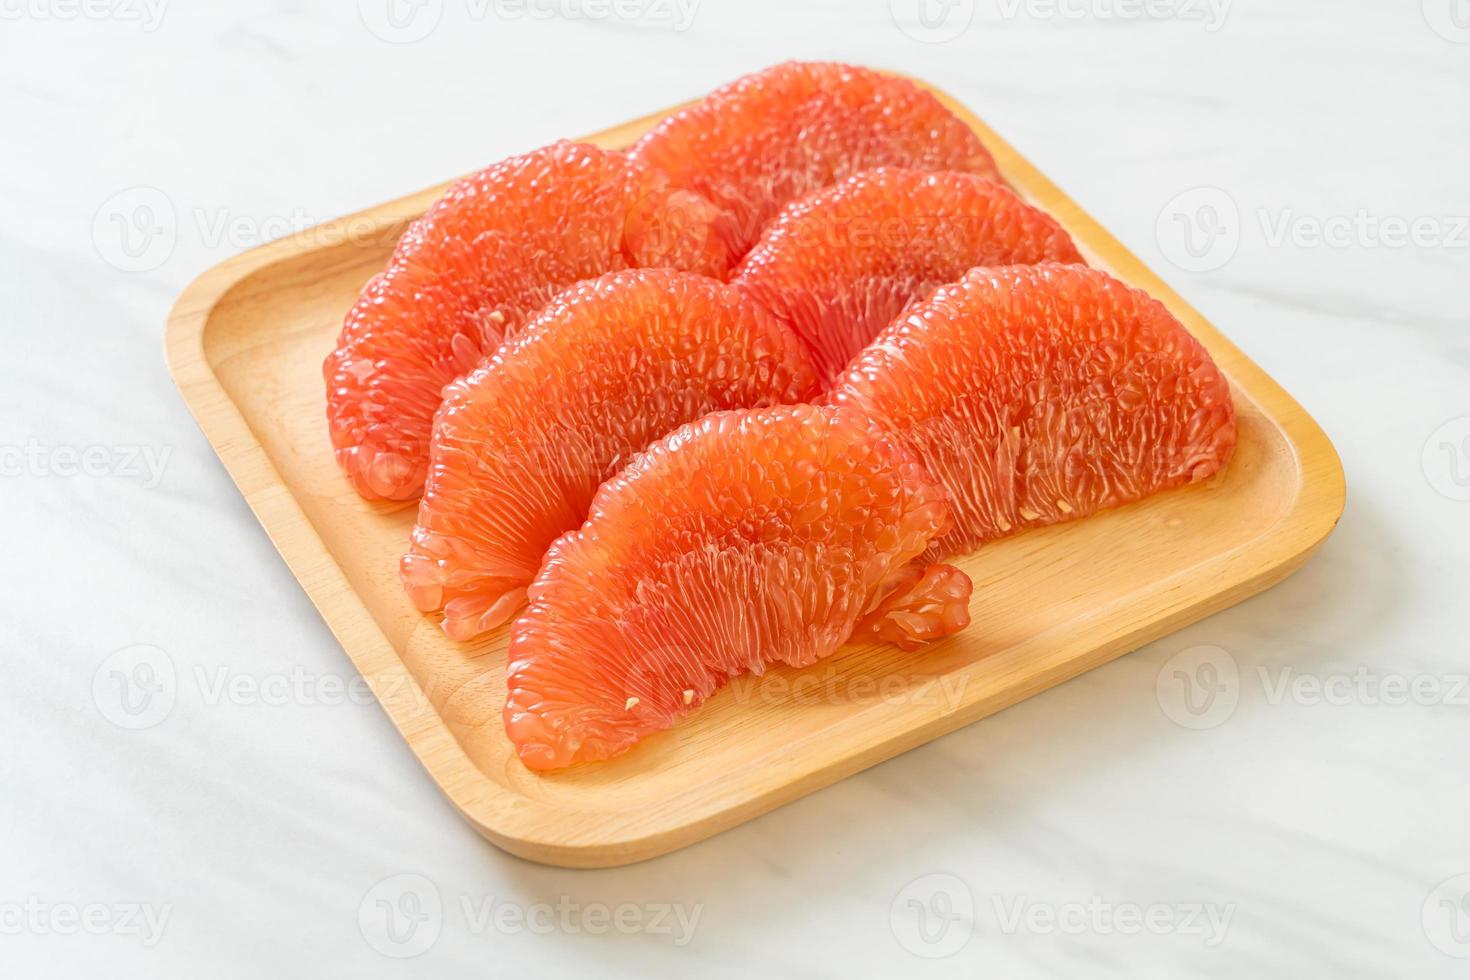 frutta fresca del pomelo rosso o pompelmo sulla piastra foto